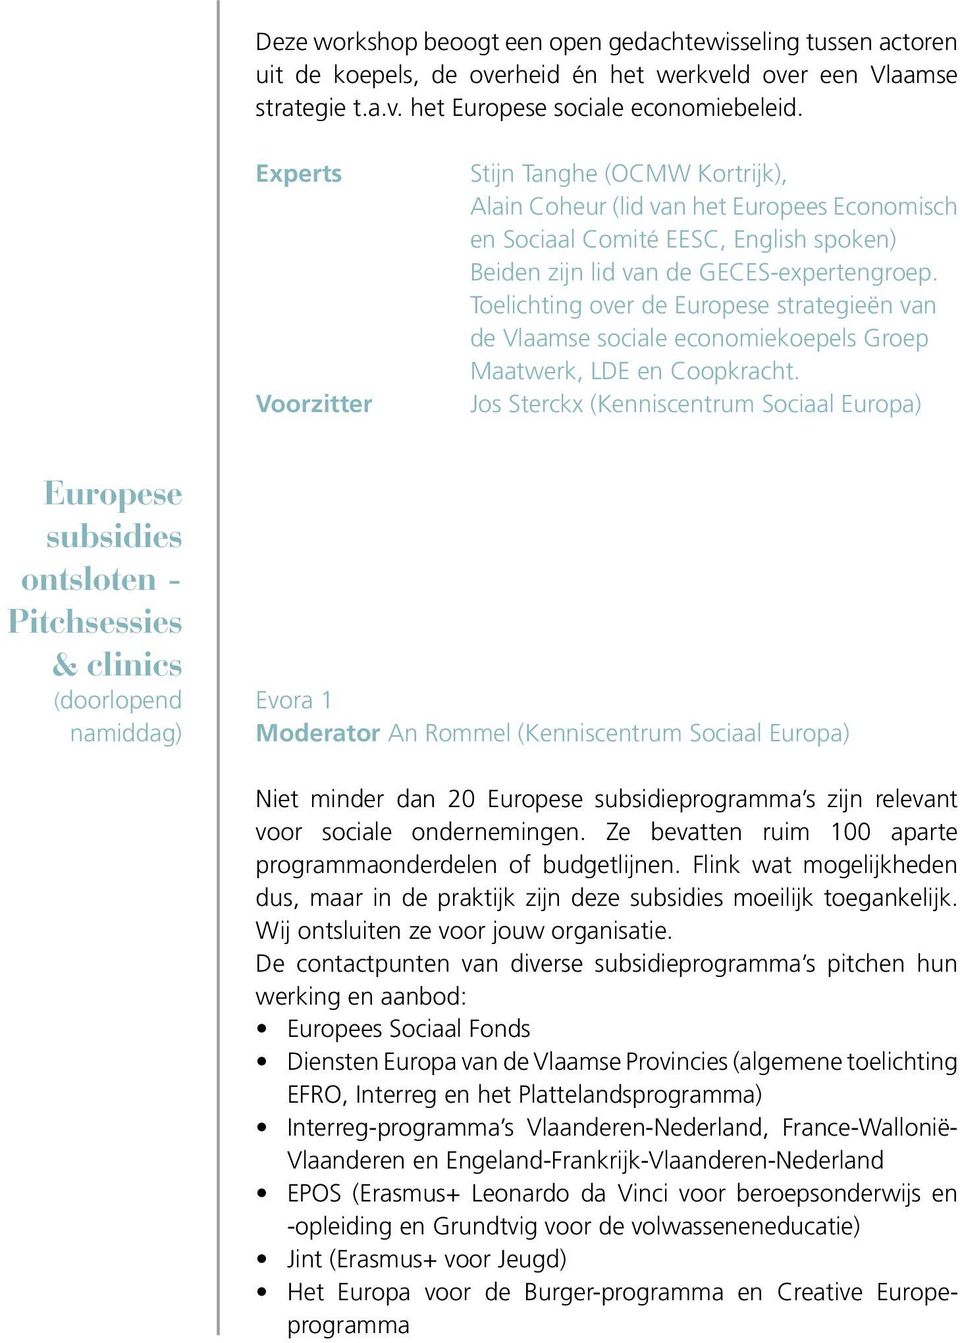 Toelichting over de Europese strategieën van de Vlaamse sociale economiekoepels Groep Maatwerk, LDE en Coopkracht.